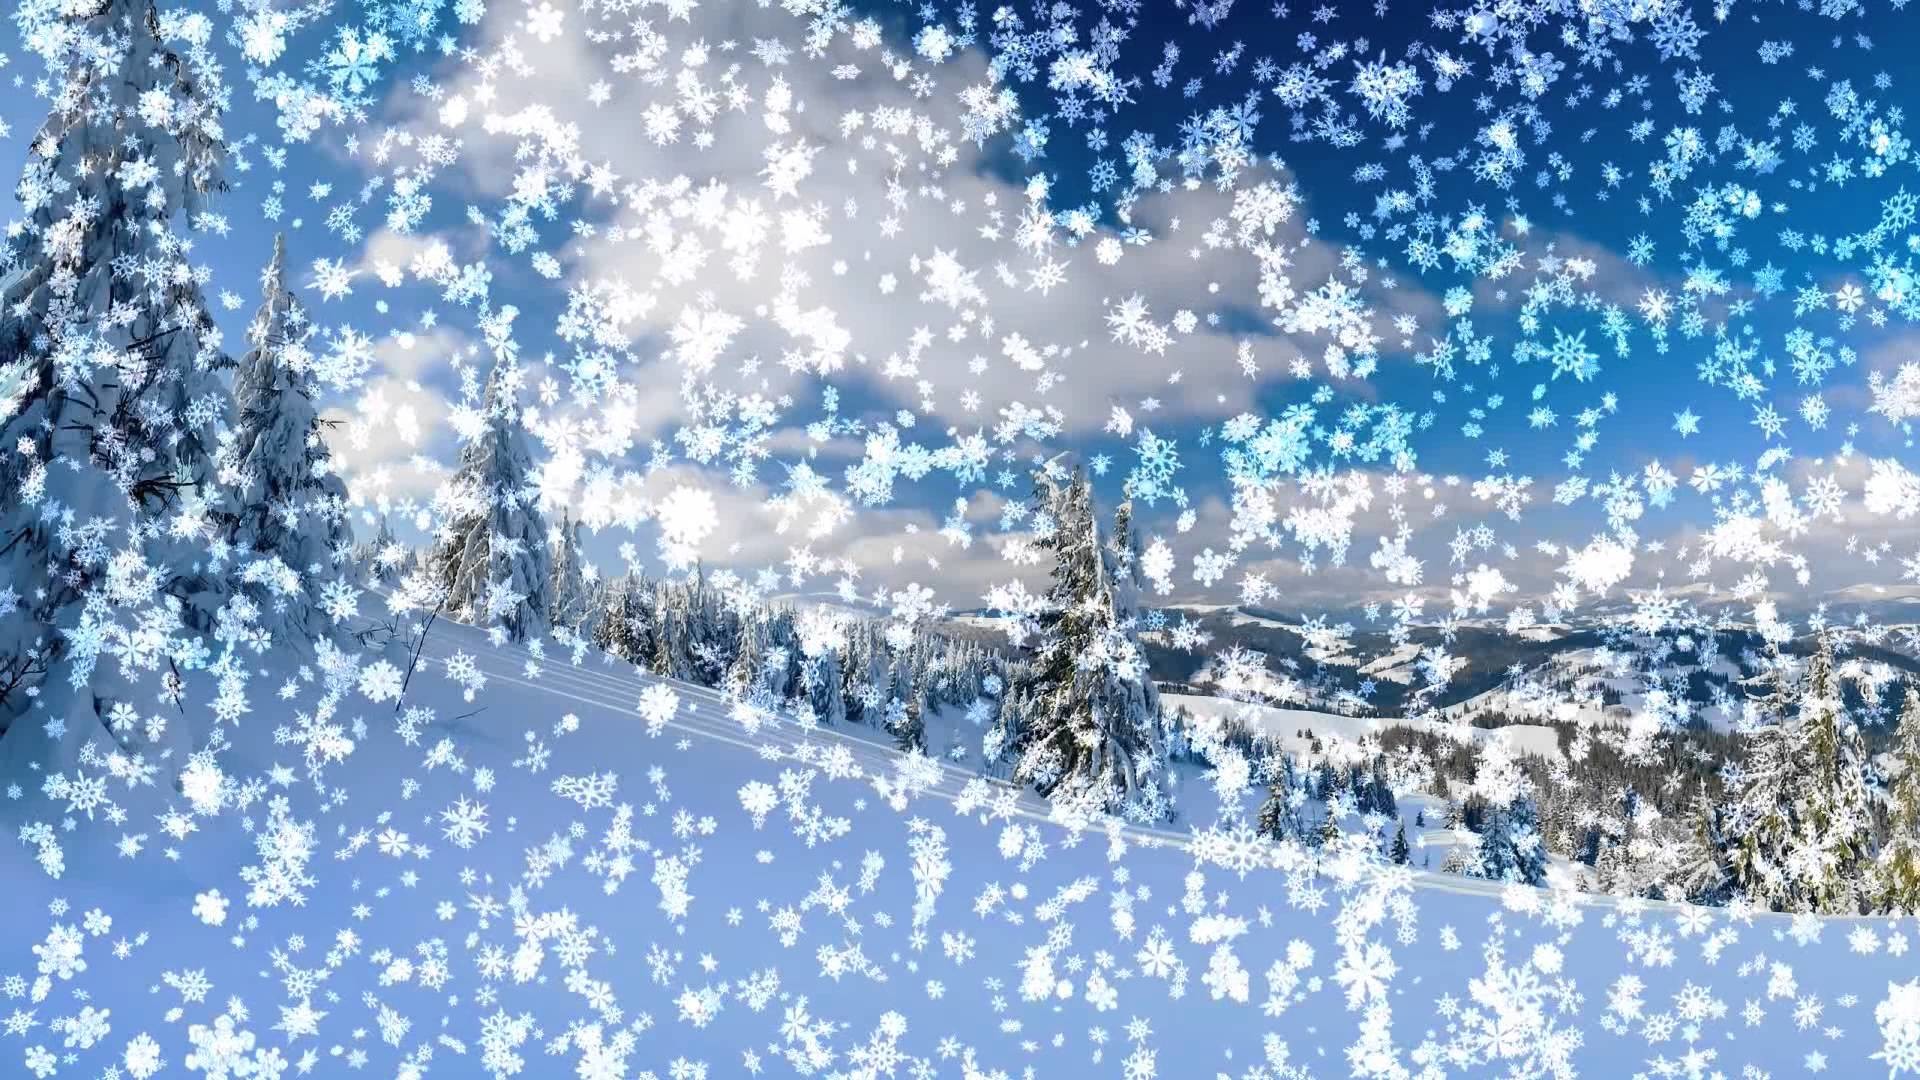 animated snow wallpaper,sky,winter,blue,snowflake,snow